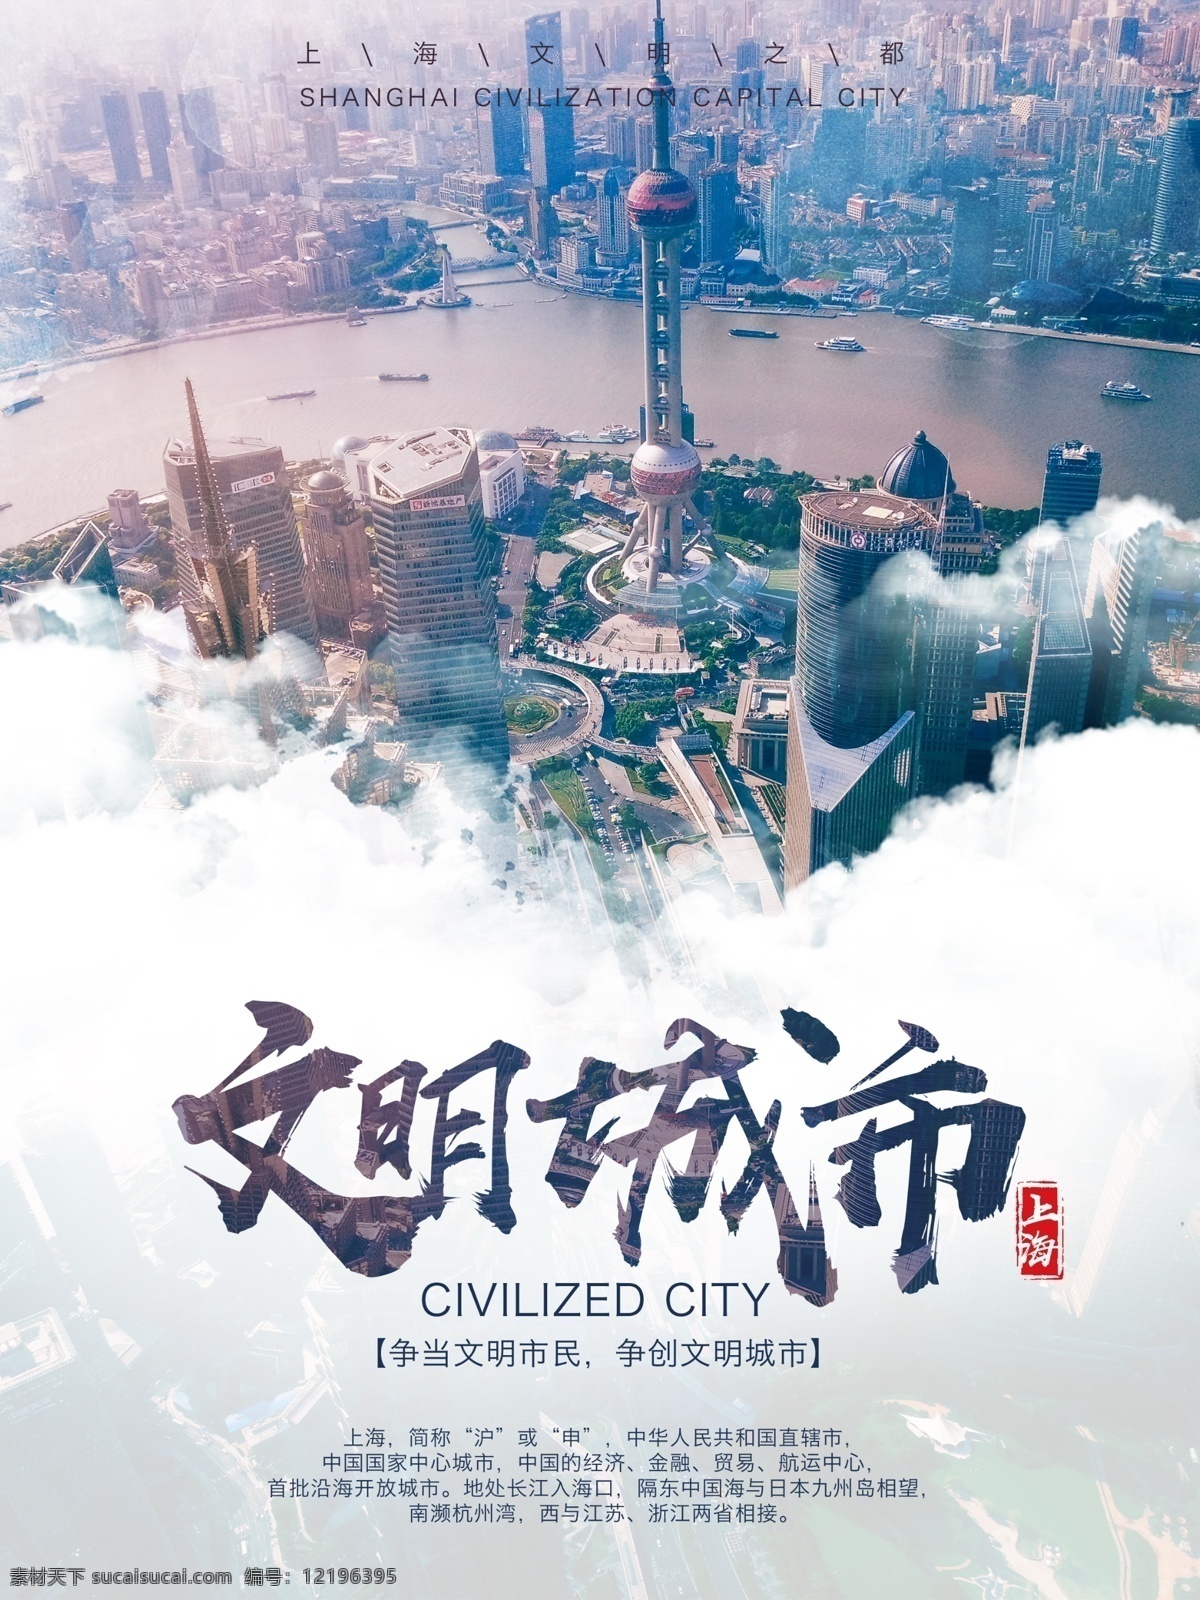 上海 东方明珠 建设 文明 城市 宣传海报 文化 礼貌 卫生 建筑 河道 市民 携手 和谐 社会 高楼大厦